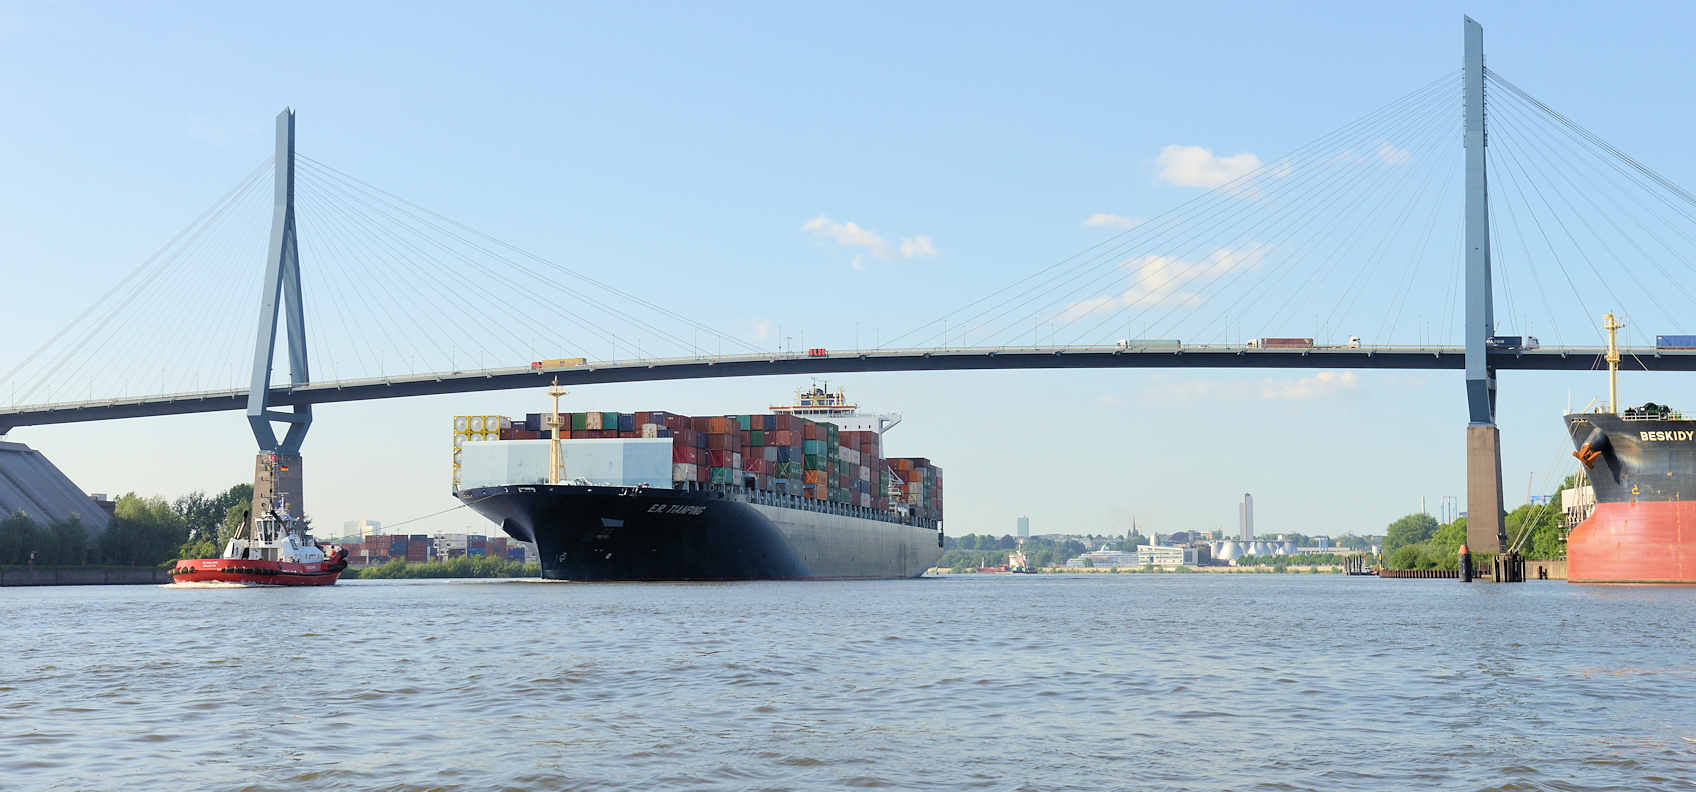 9290 Der Containerfrachter E.R. Tianping läuft in den Hamburger Hafen | Schiffsbilder Hamburger Hafen - Schiffsverkehr Elbe